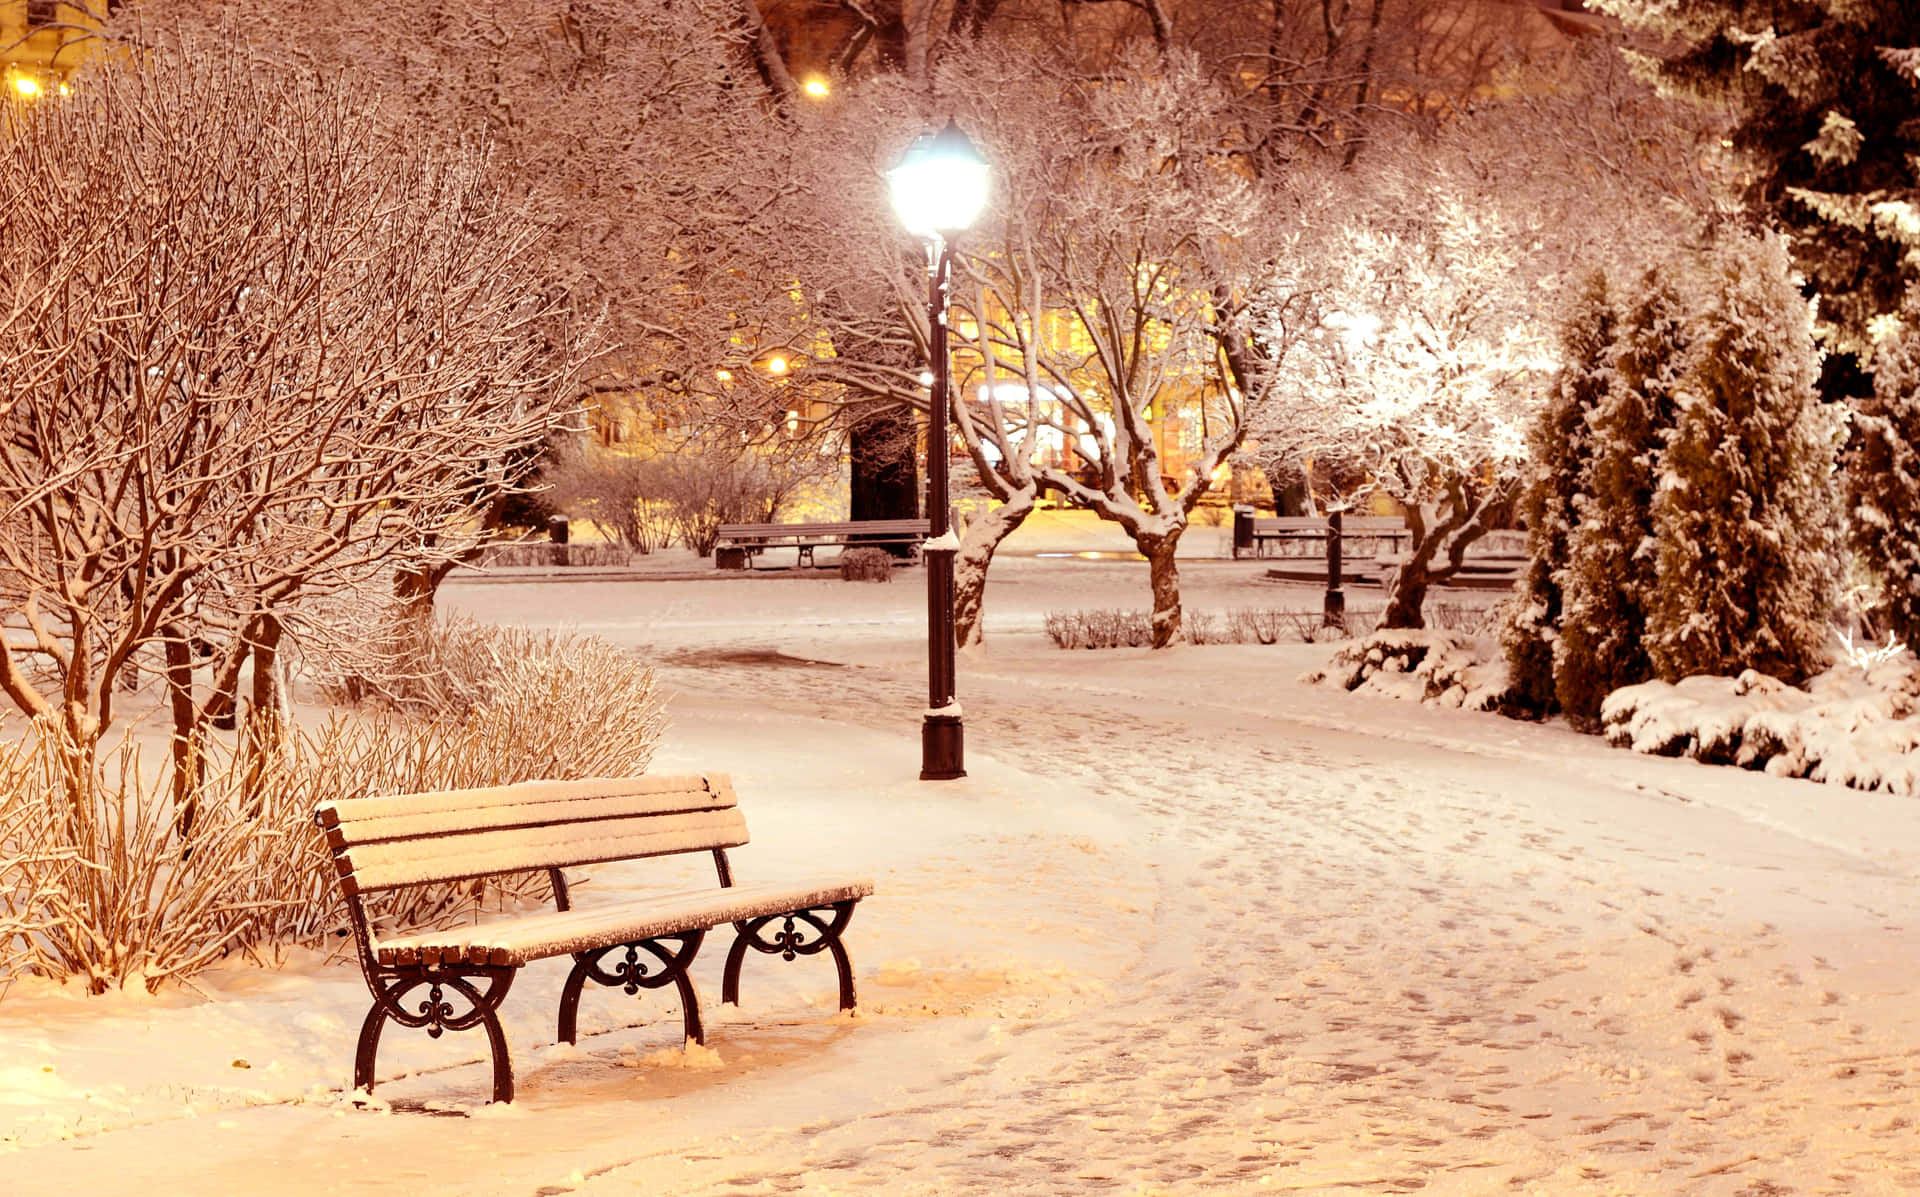 "A Magical Winter Wonderland"